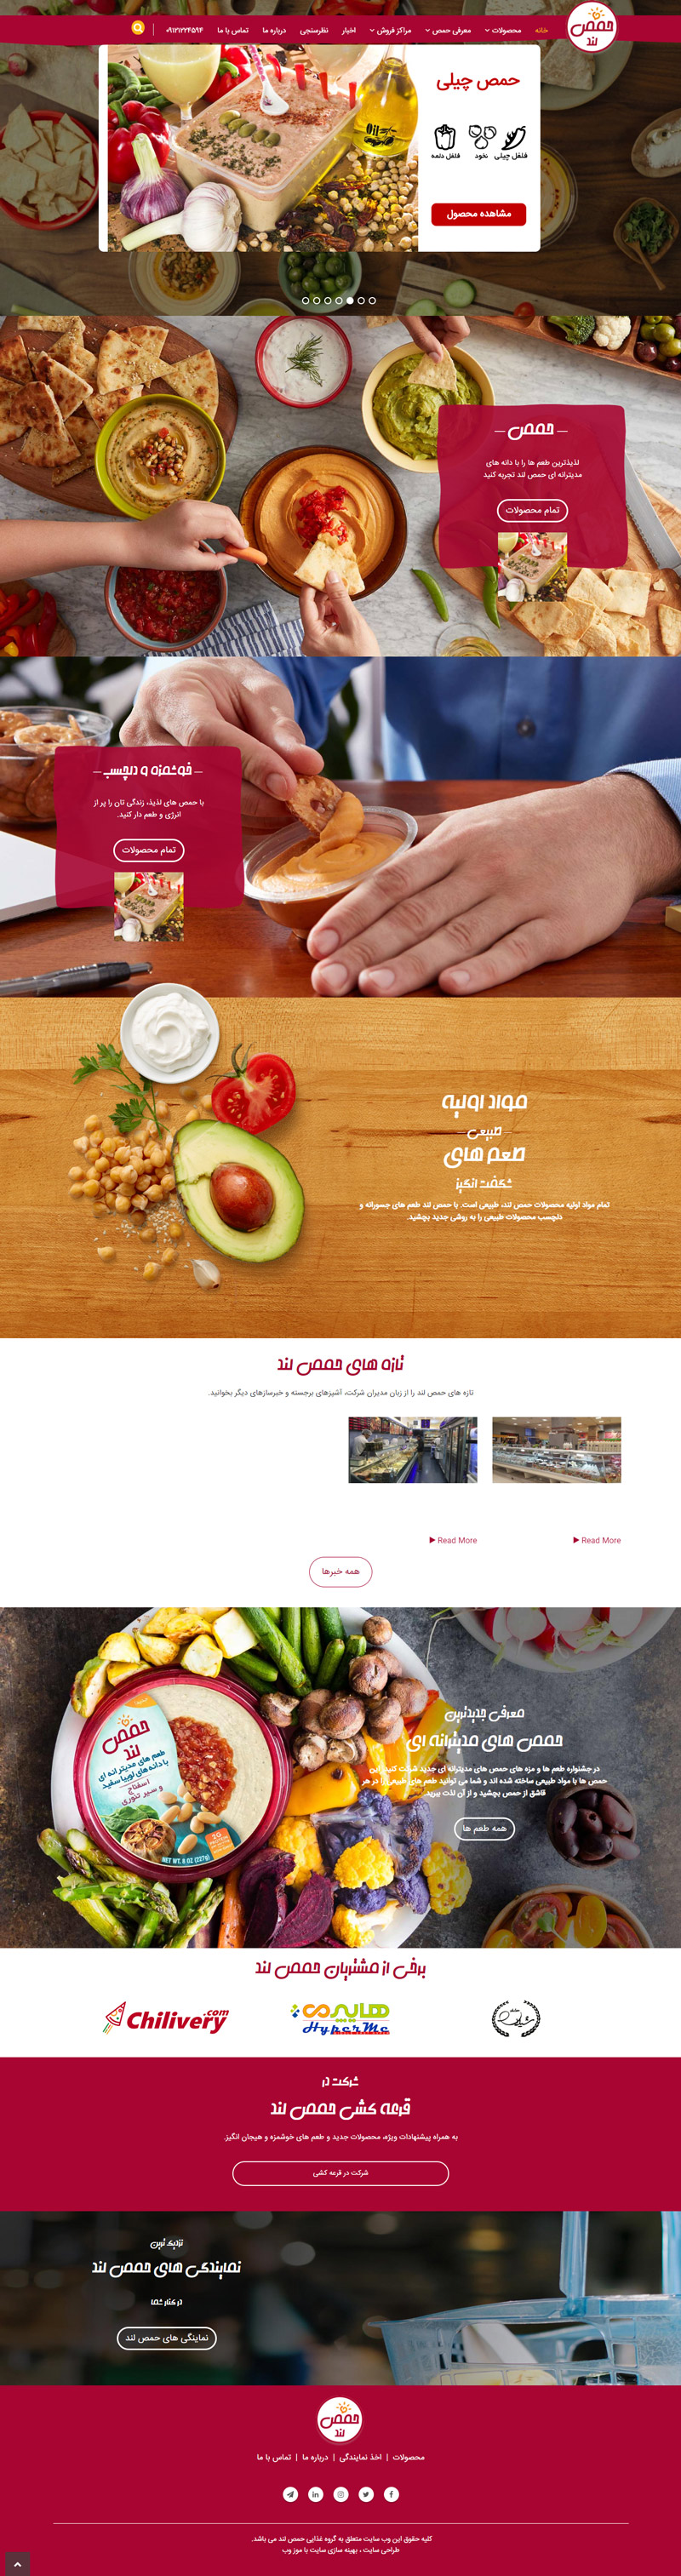 طراحی سایت گروه غذایی حمص لند